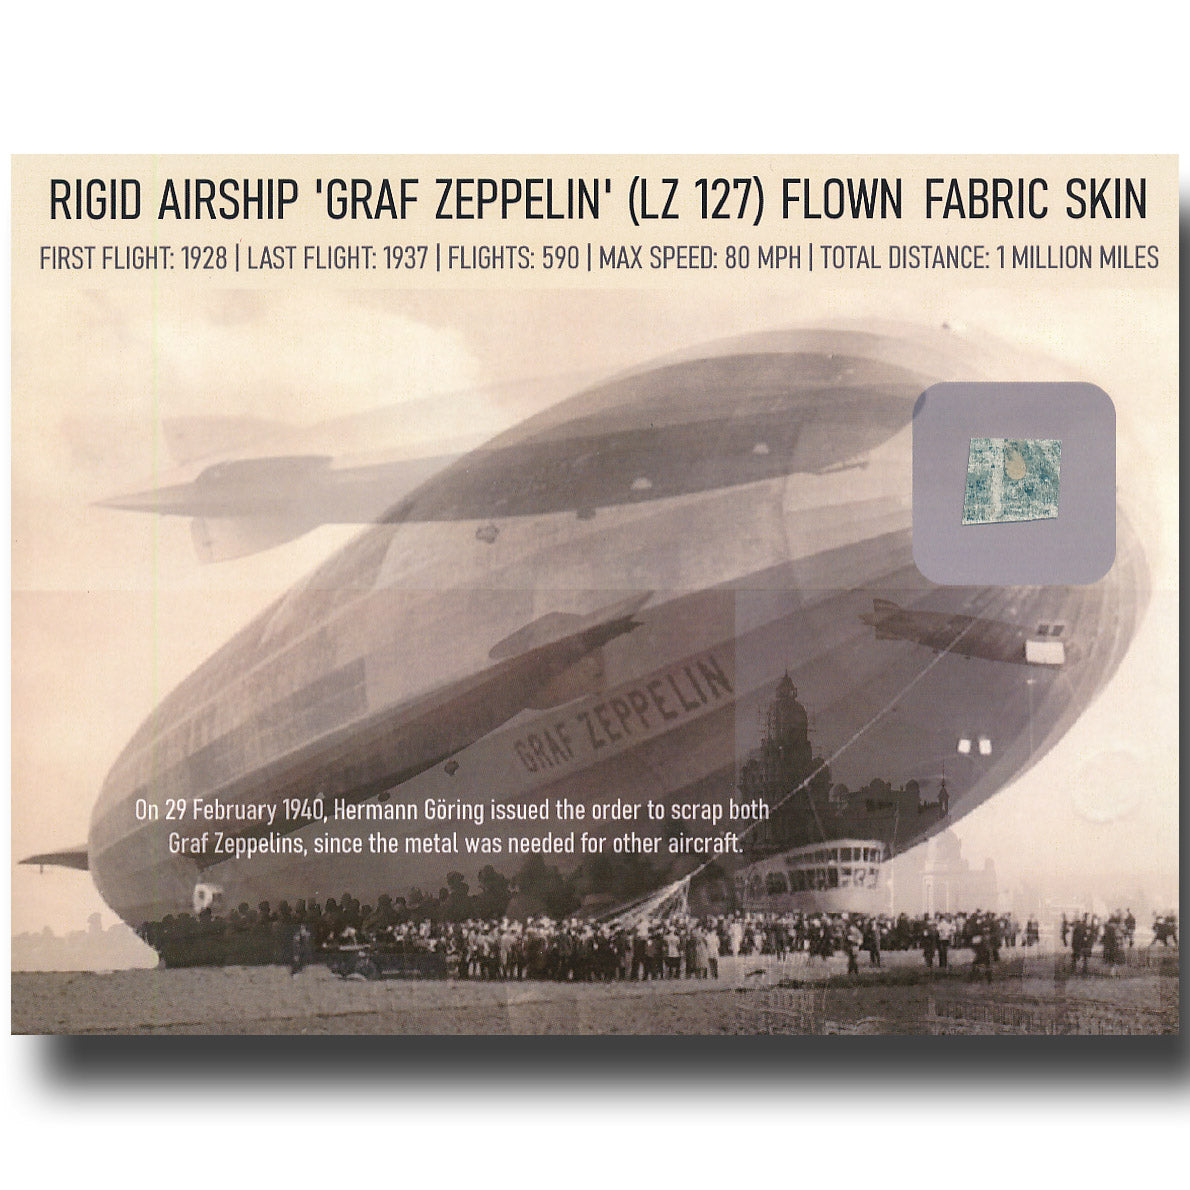 Graf Zeppelin rigid airship LZ 127 flown fabric skin